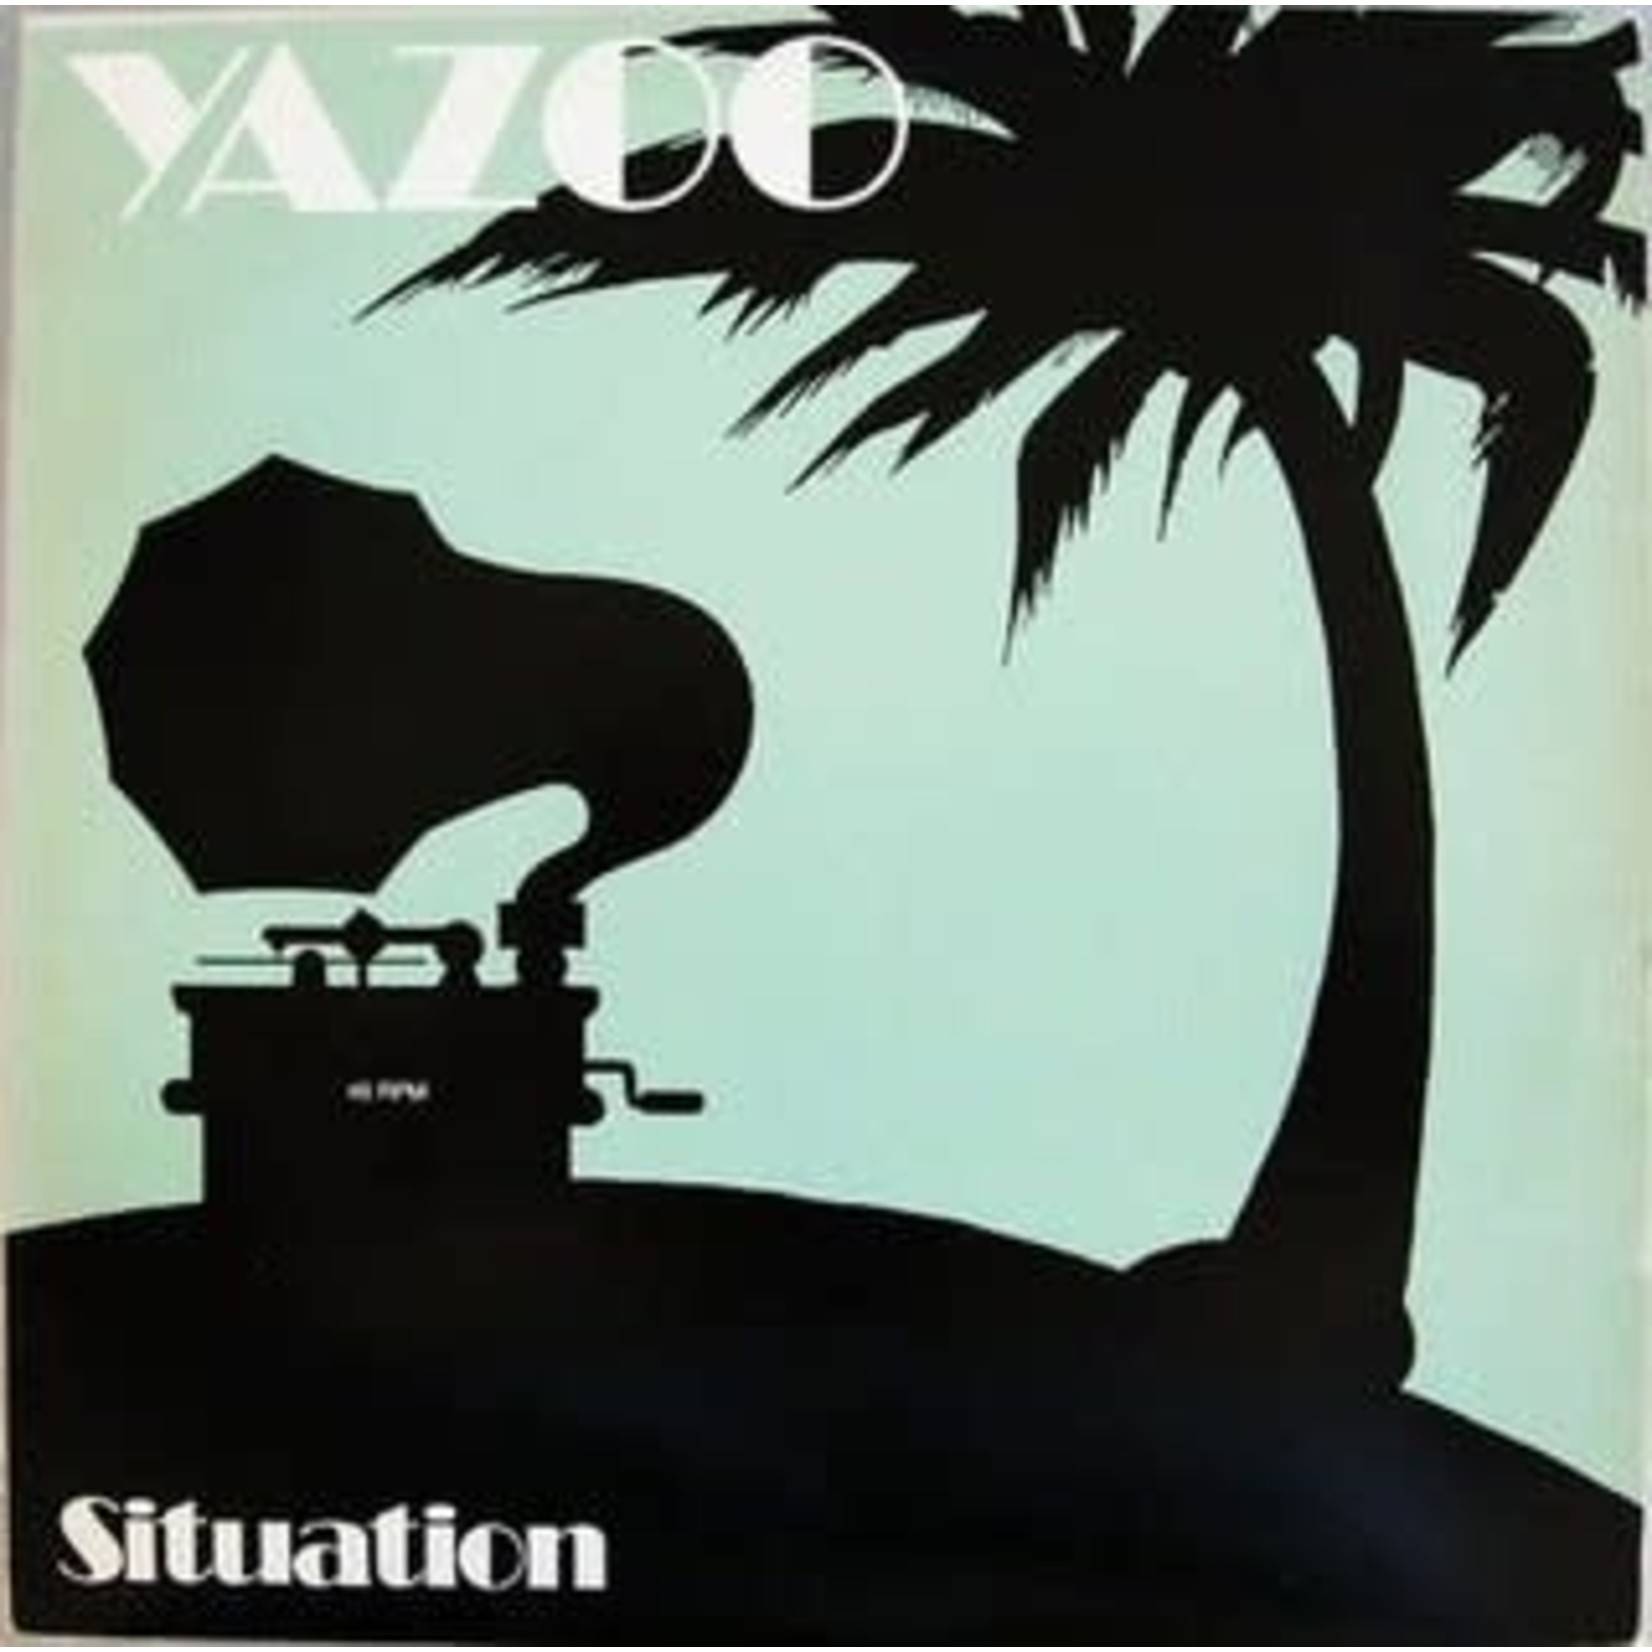 [Vintage] Yazoo: Situation (12") [VINTAGE]